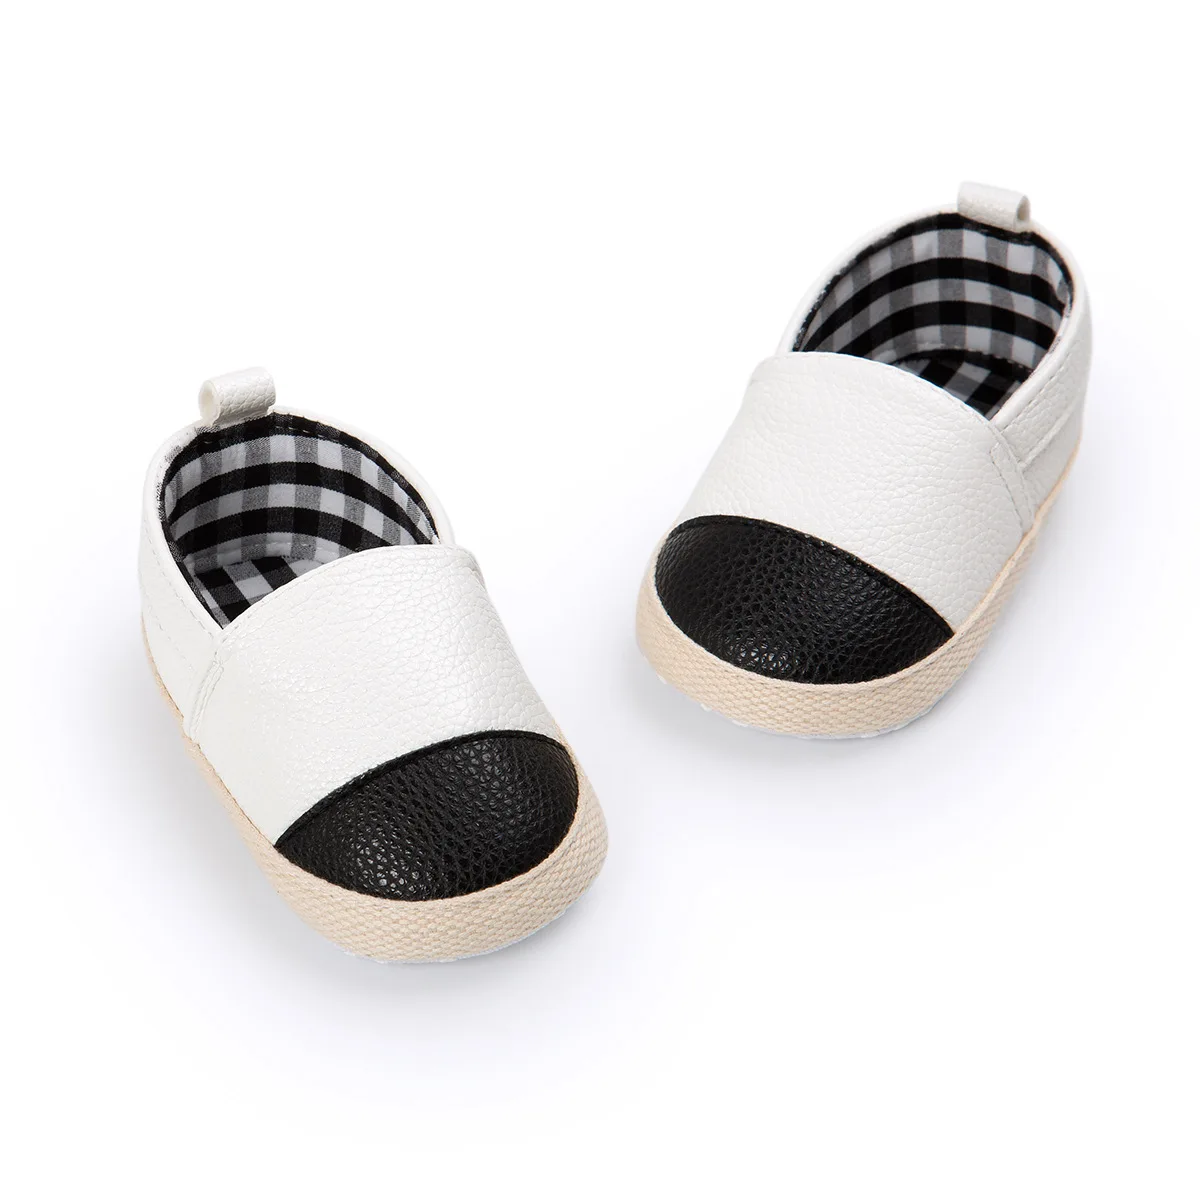 Обувь для новорожденного мальчика девочки Младенческая Детская кроватка обувь PU блестящие черные квадраты хлопок противоскользящая подошва новорожденный малыш первые ходунки обувь - Цвет: Белый